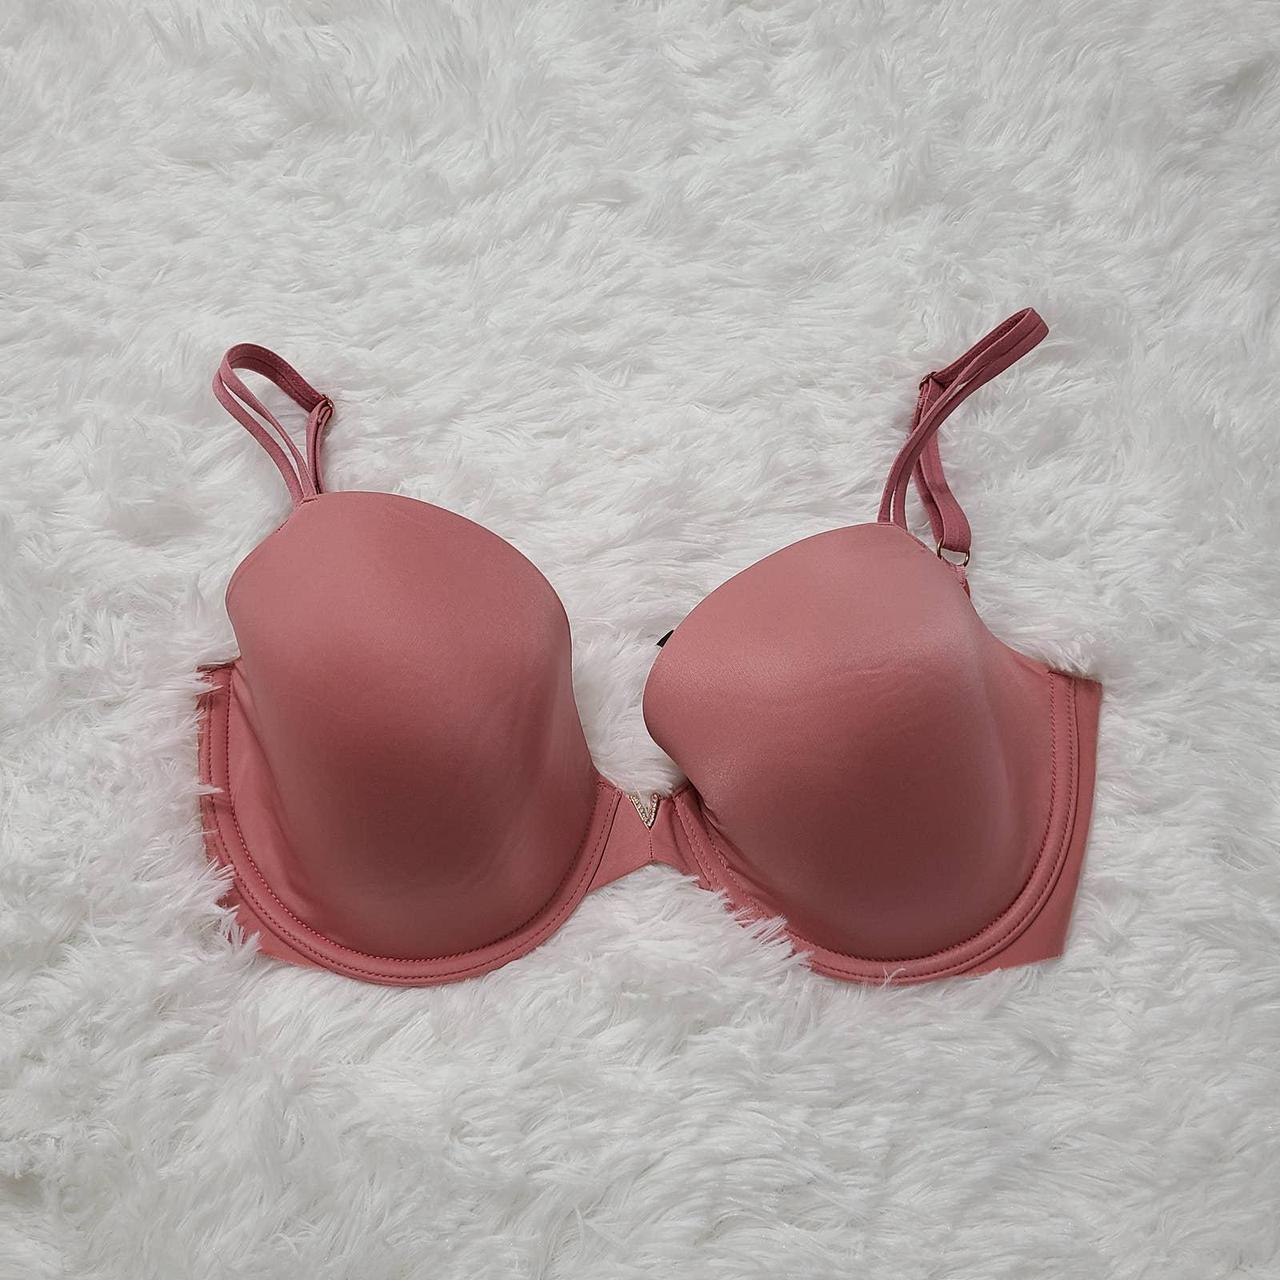 victoria's secret dusty pink bra. 32DDD. lined. - Depop